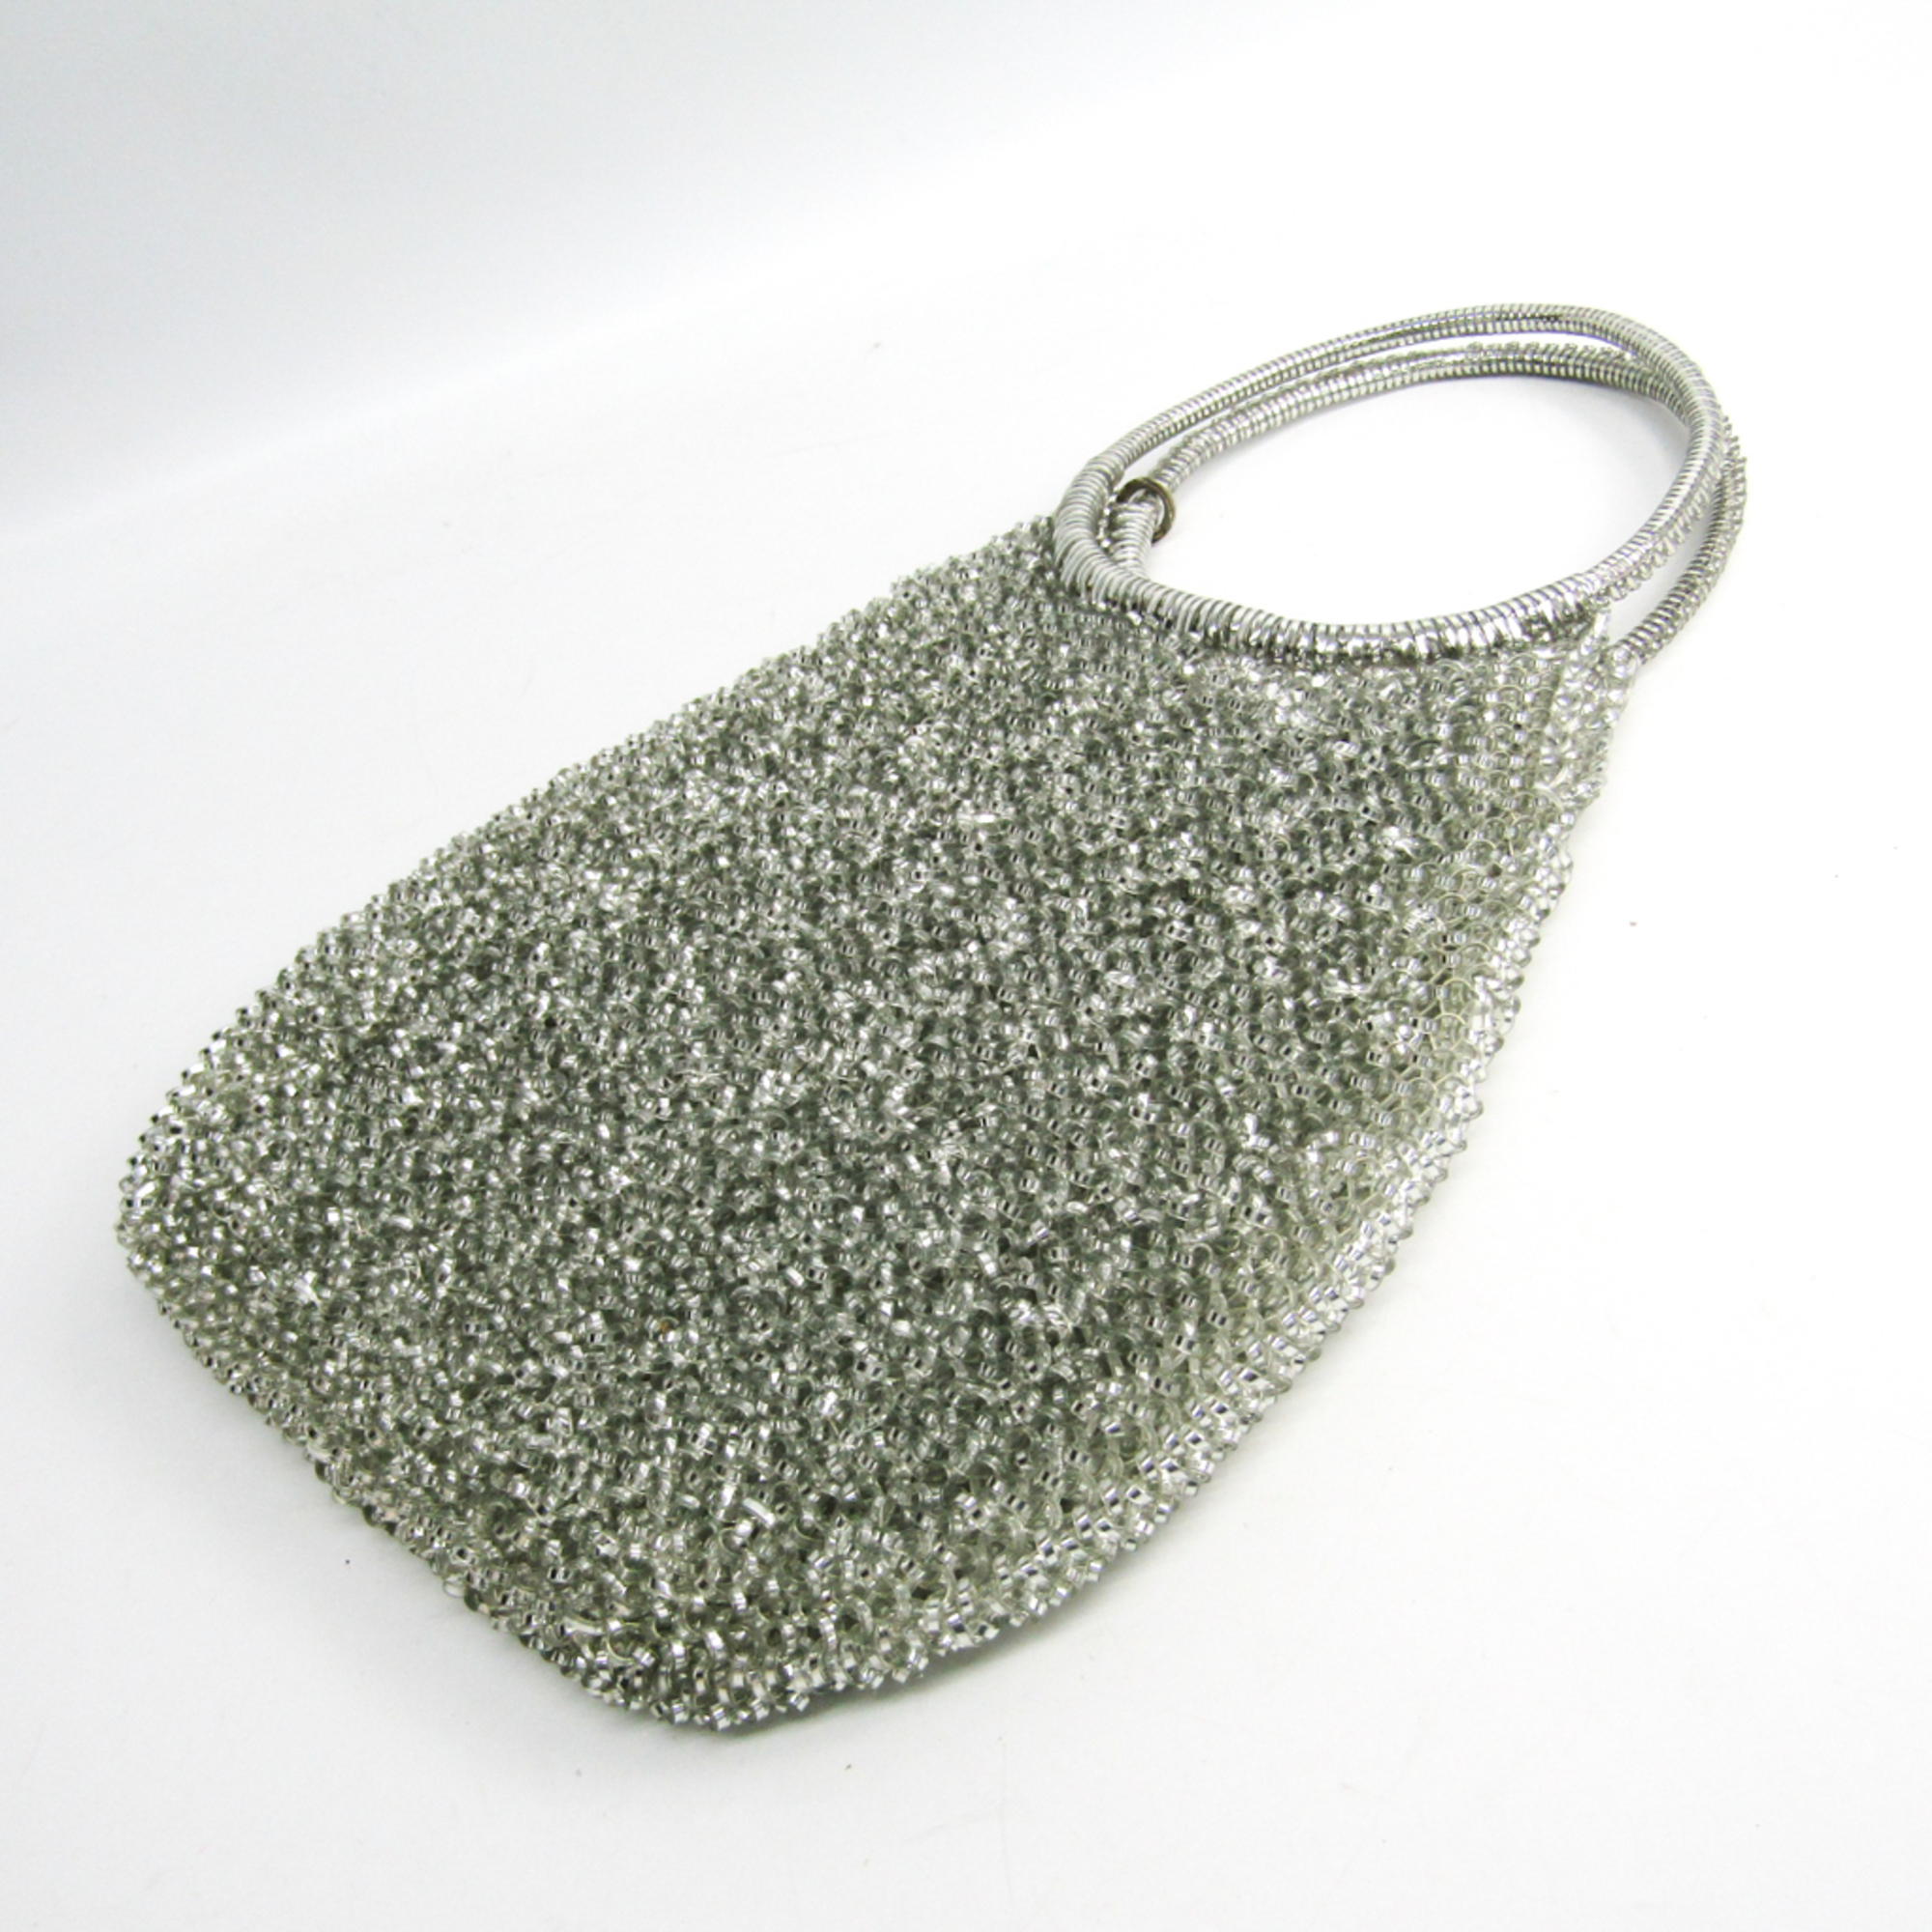 Anteprima Wire Handbag Silver